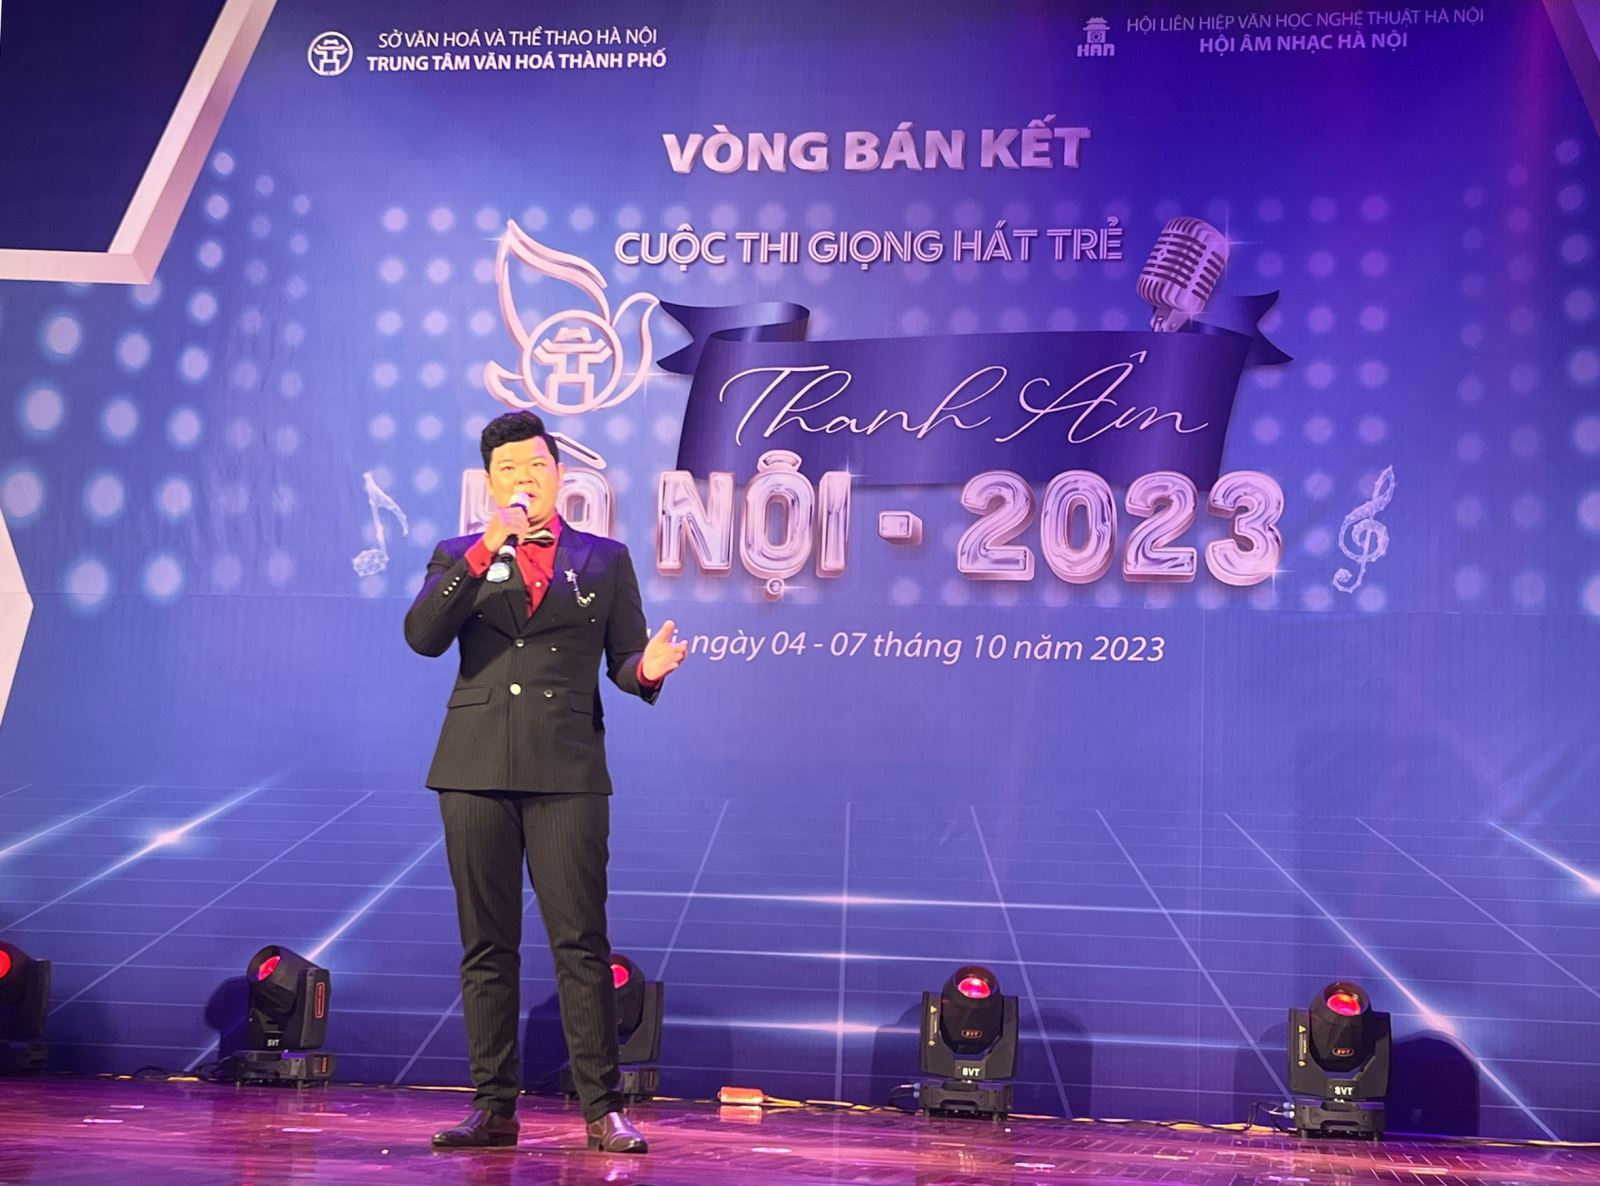 Cuộc thi “Giọng hát trẻ Thanh âm Hà Nội - 2023”: Sân chơi hấp dẫn cho các giọng ca trẻ